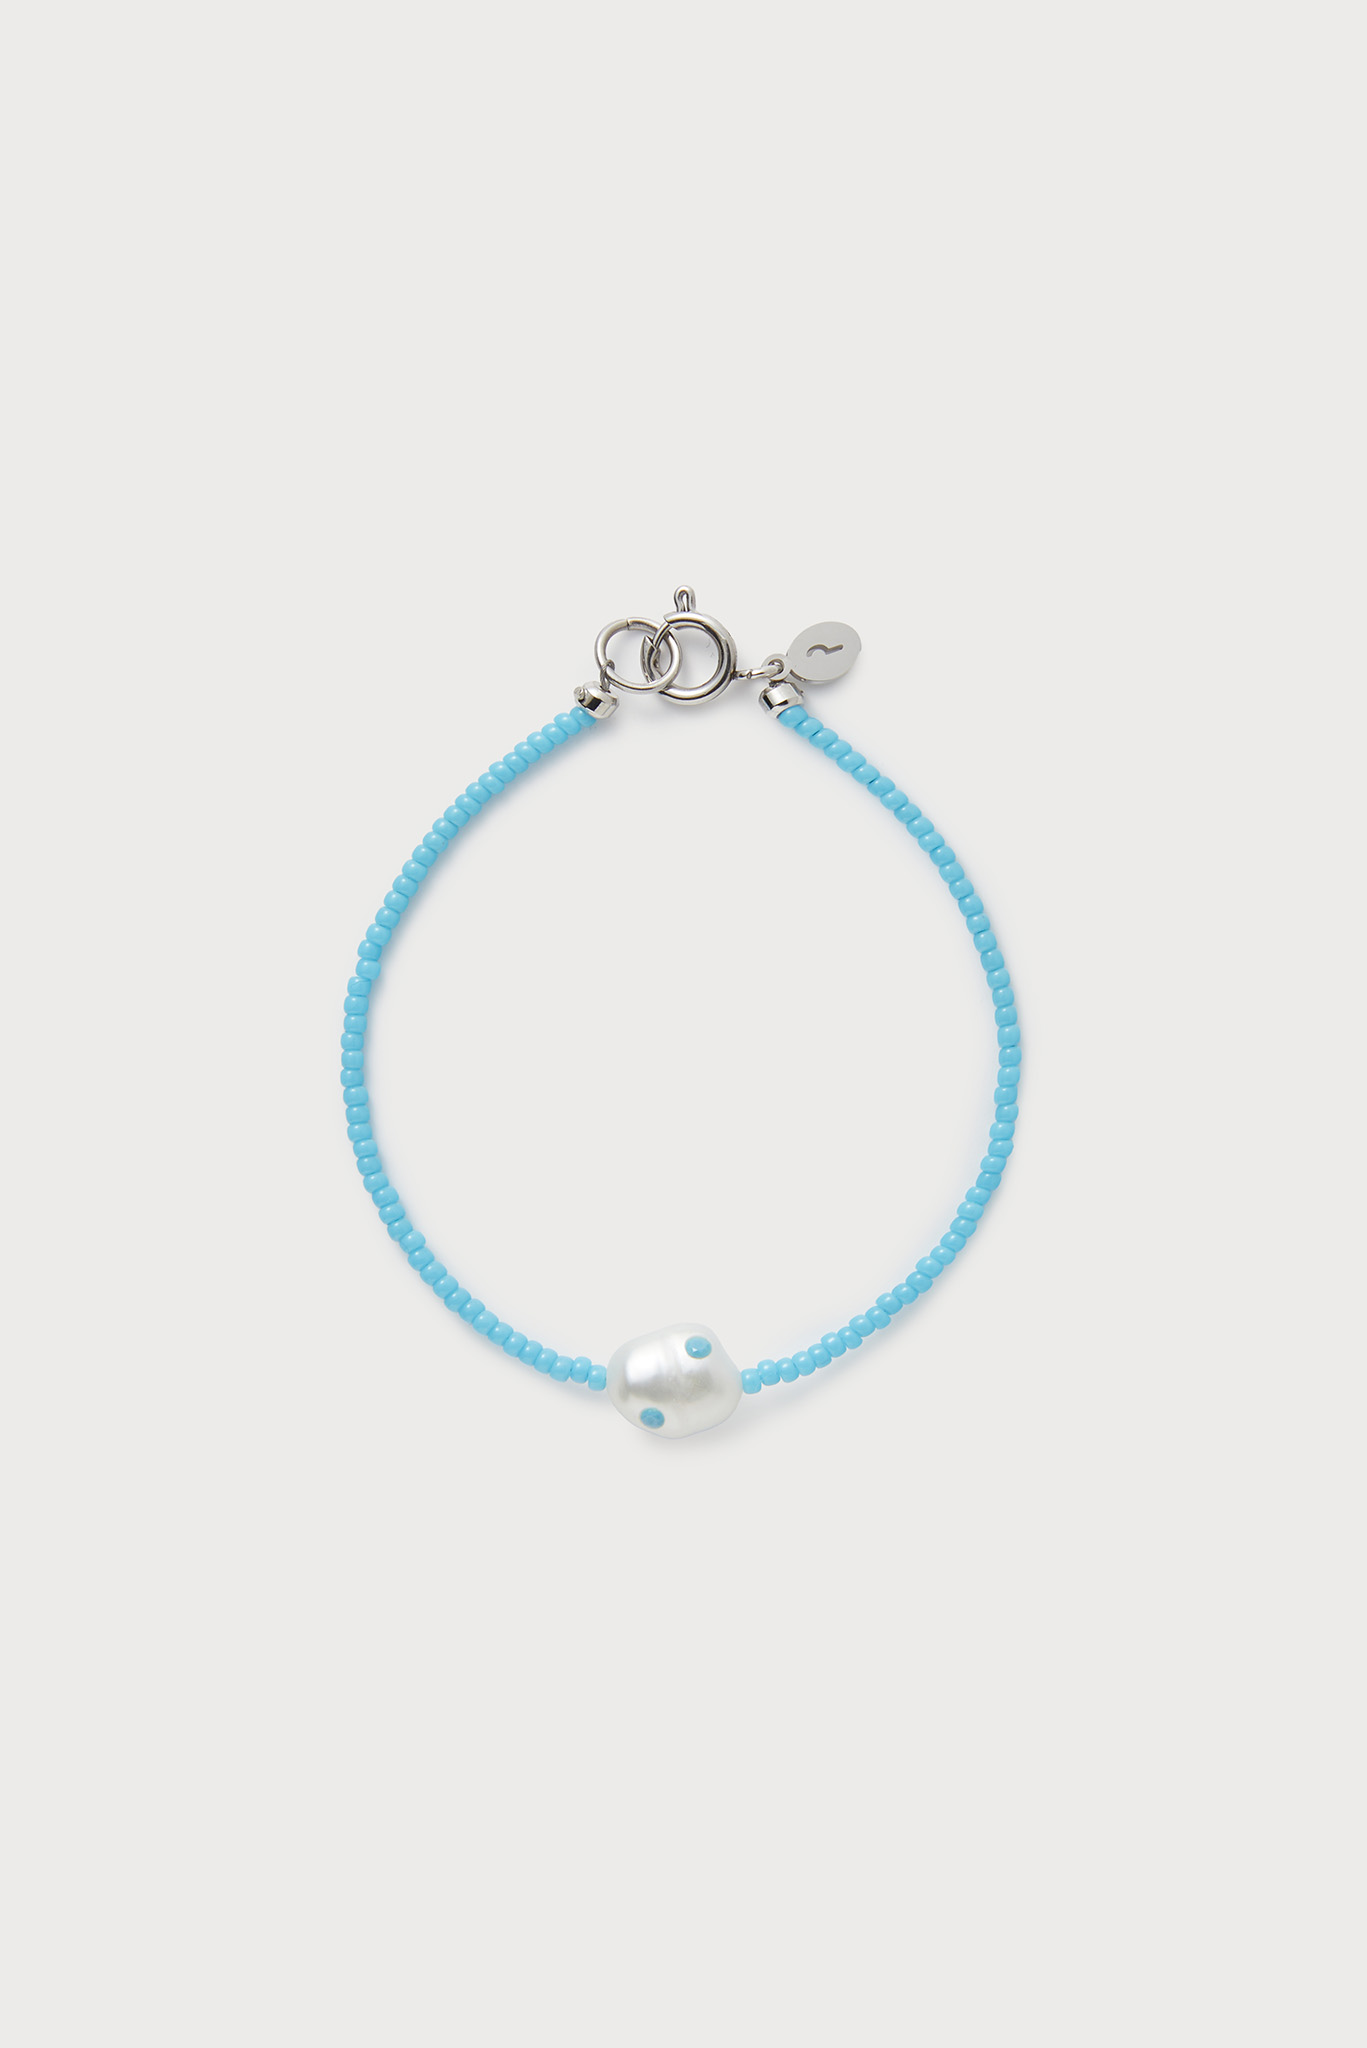 Ashore Bracelet, Turquoise